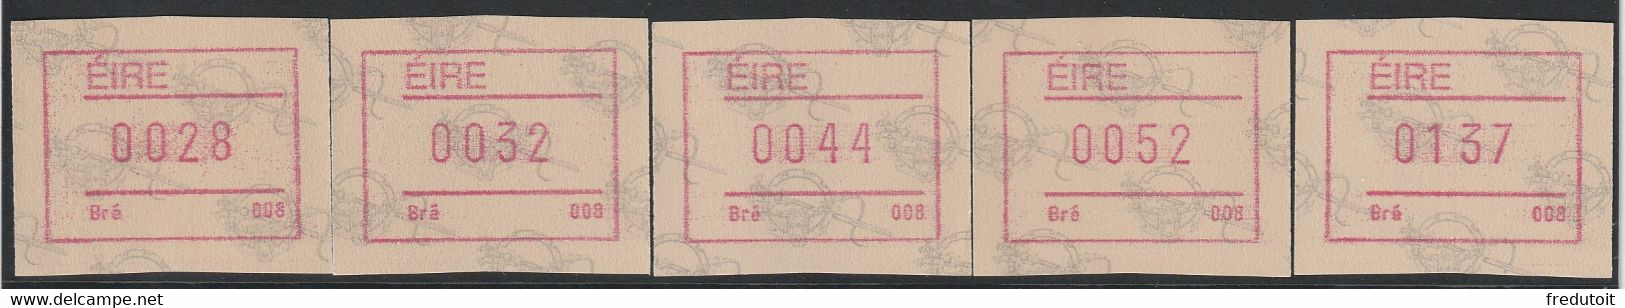 IRLANDE - Timbres Distributeurs / FRAMA  ATM - N°4** (1992) Bré 008 - Franking Labels